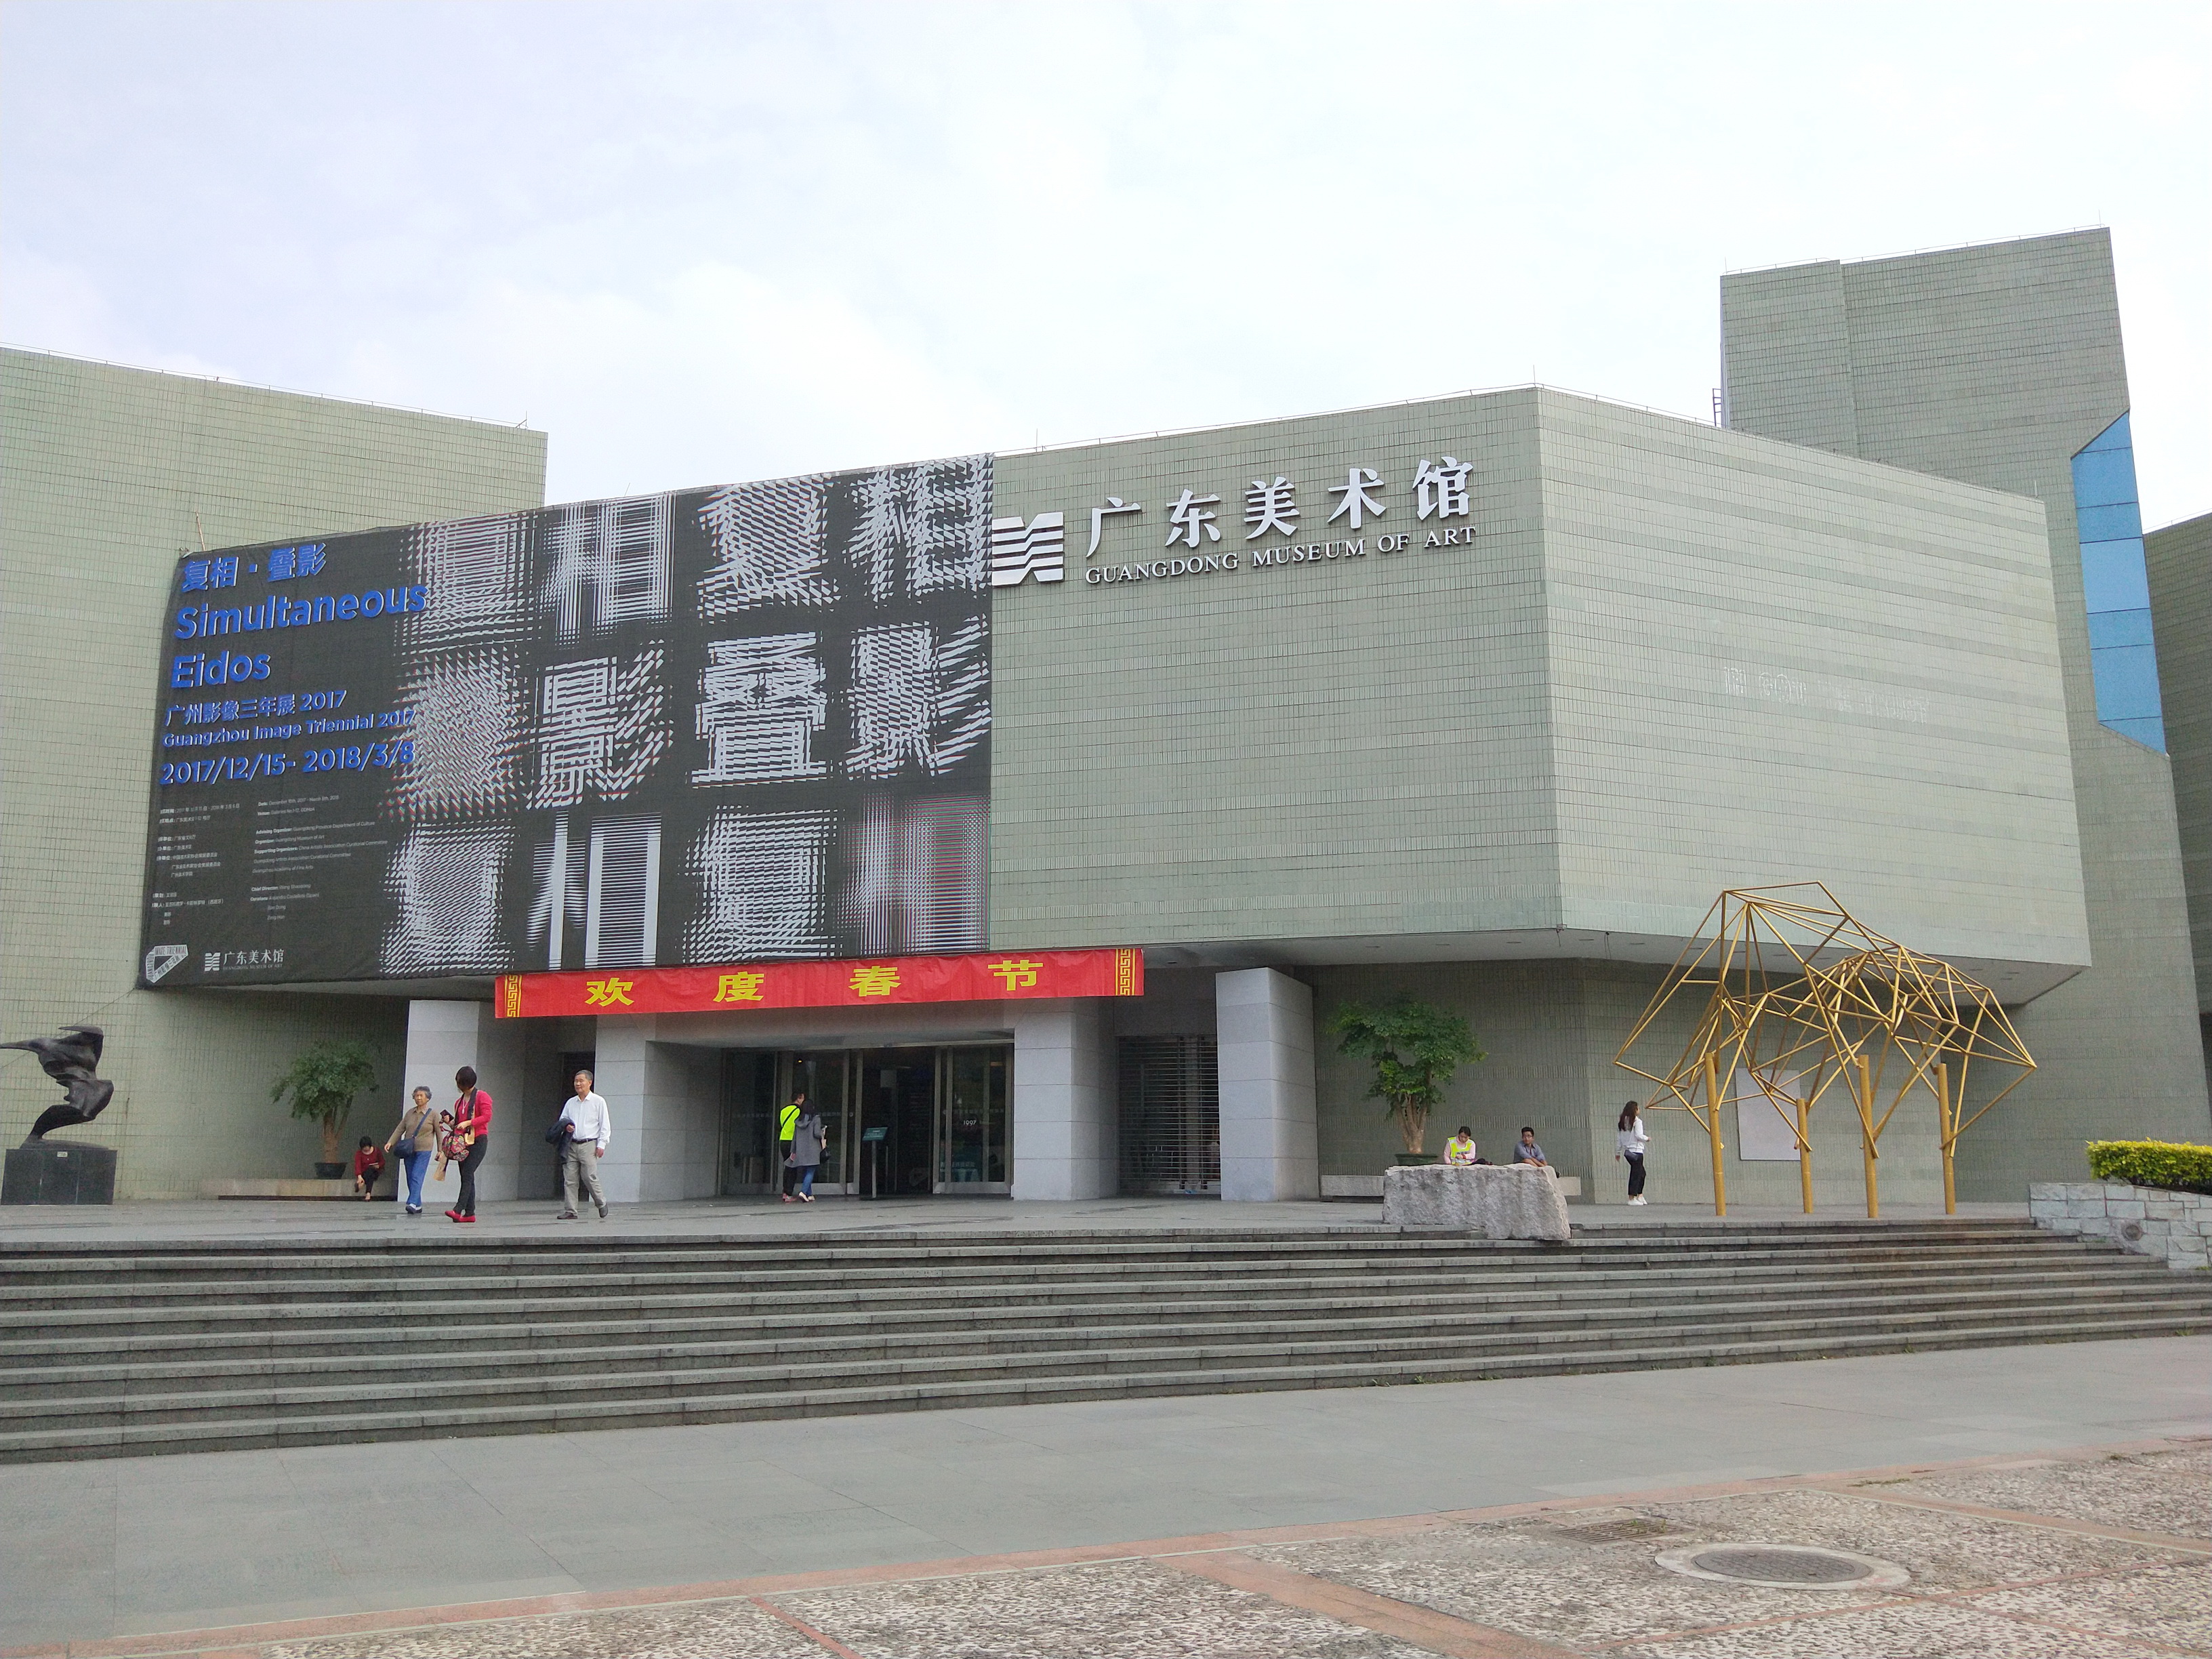 广东美术馆游记:广州二沙岛上的免费艺术馆,艺术气息浓厚